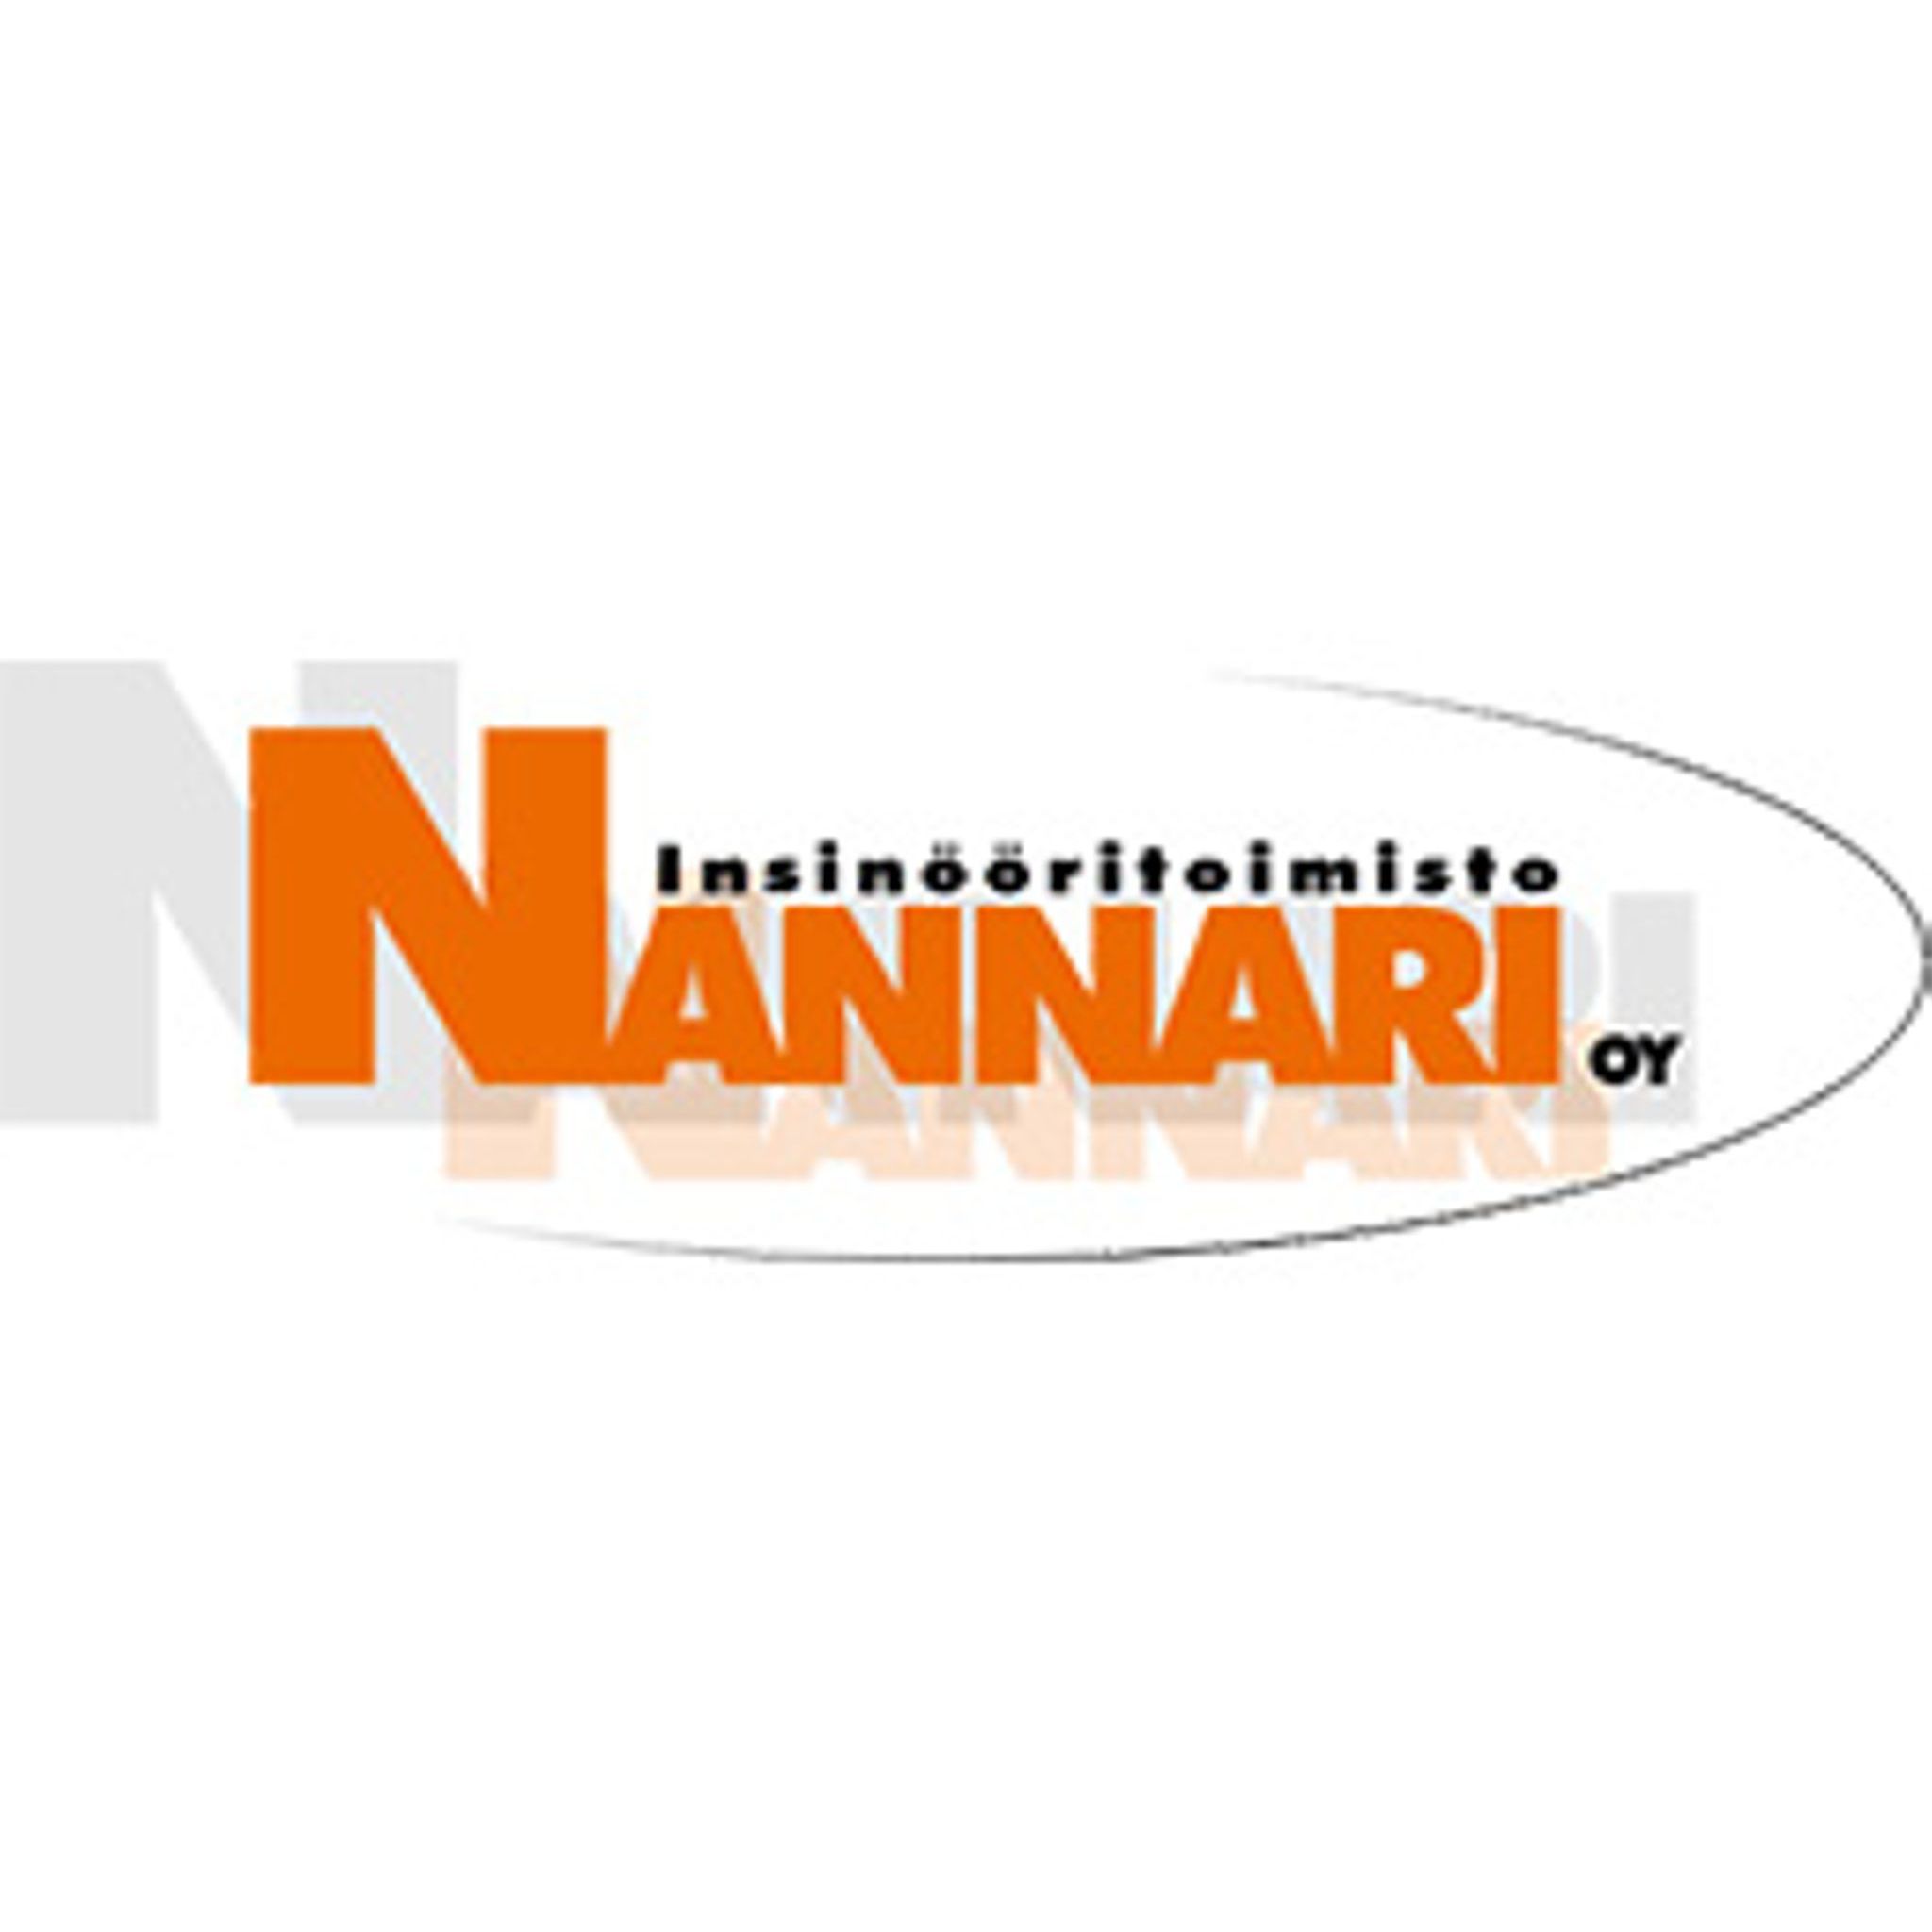 Insinööritoimisto Nannari Oy Logo